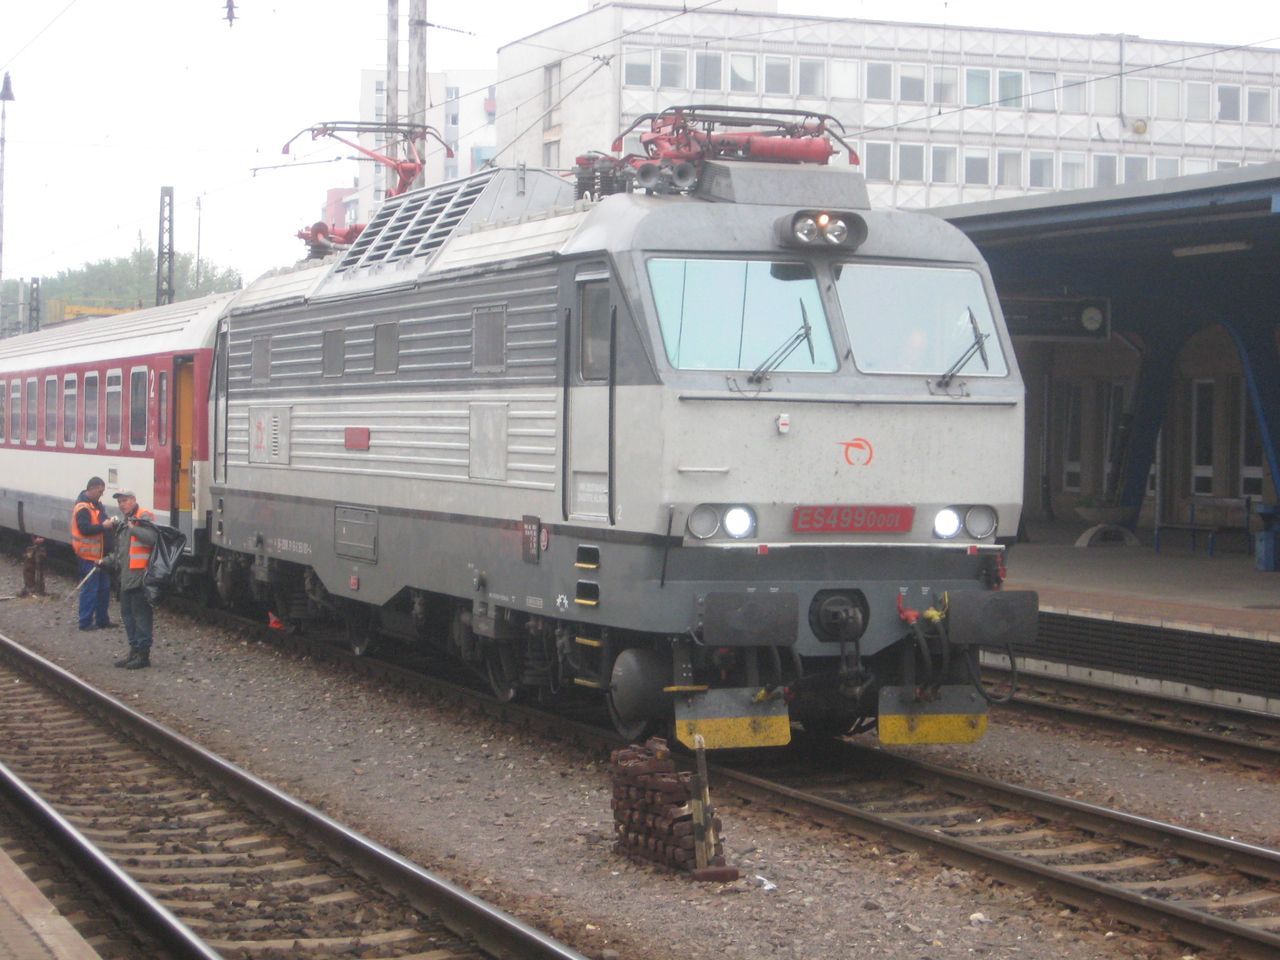 Protypov krysa ES 499.0001 (350.001) ZSSK pi posunu ve stanici Bratislava Nov Mesto. 